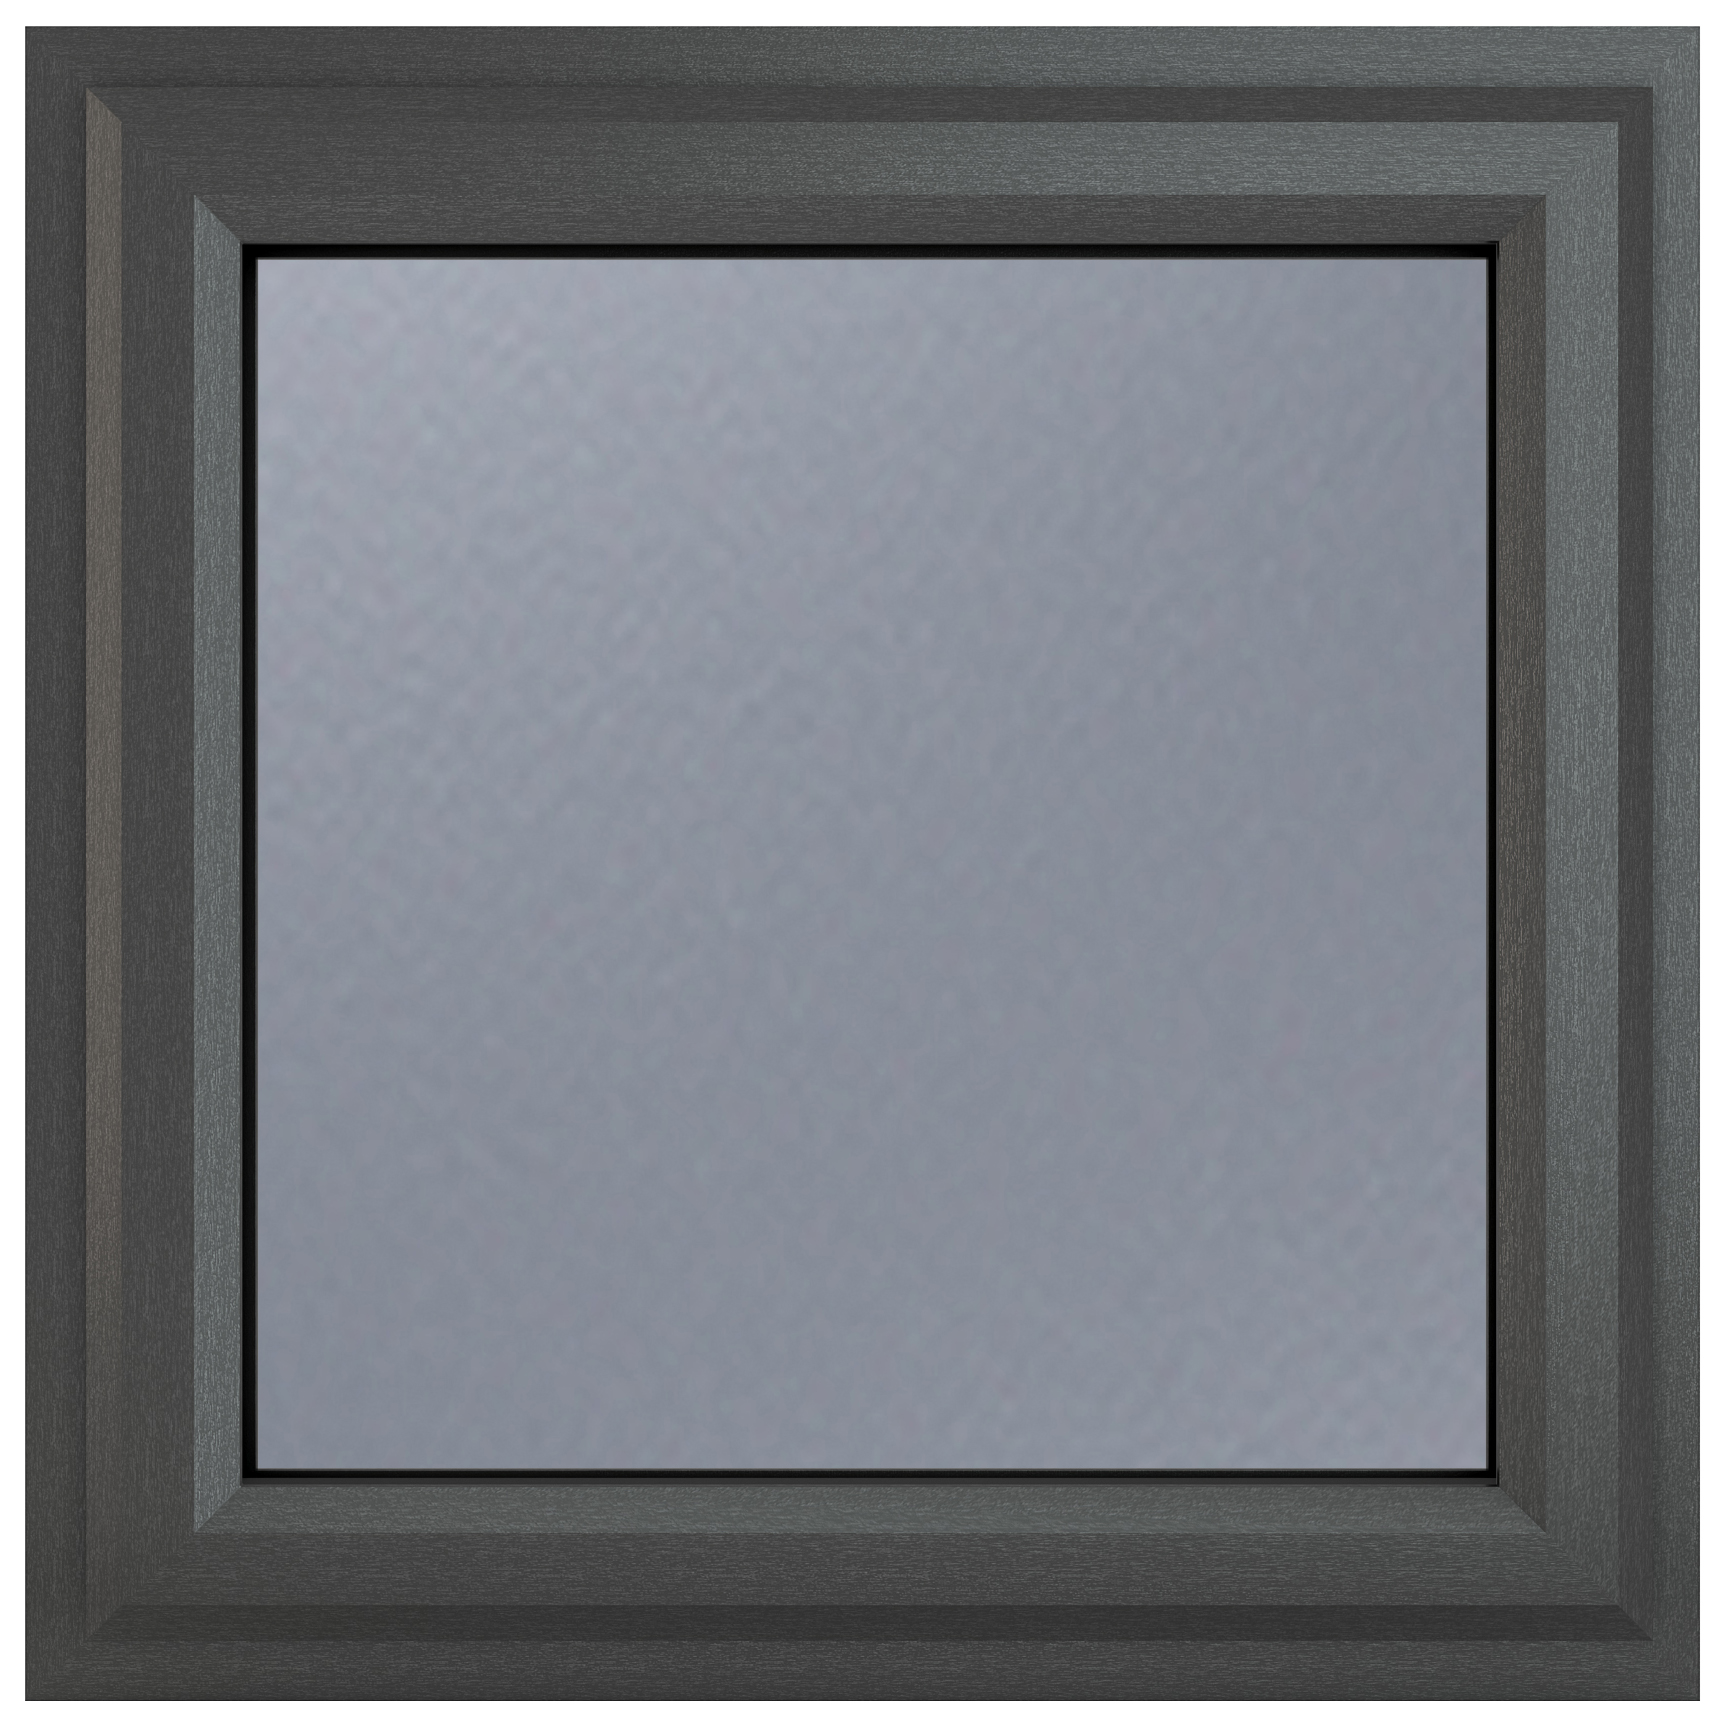 Crystal uPVC Grey Top Opener Obscure Double Glazed Window - 610 x 610mm